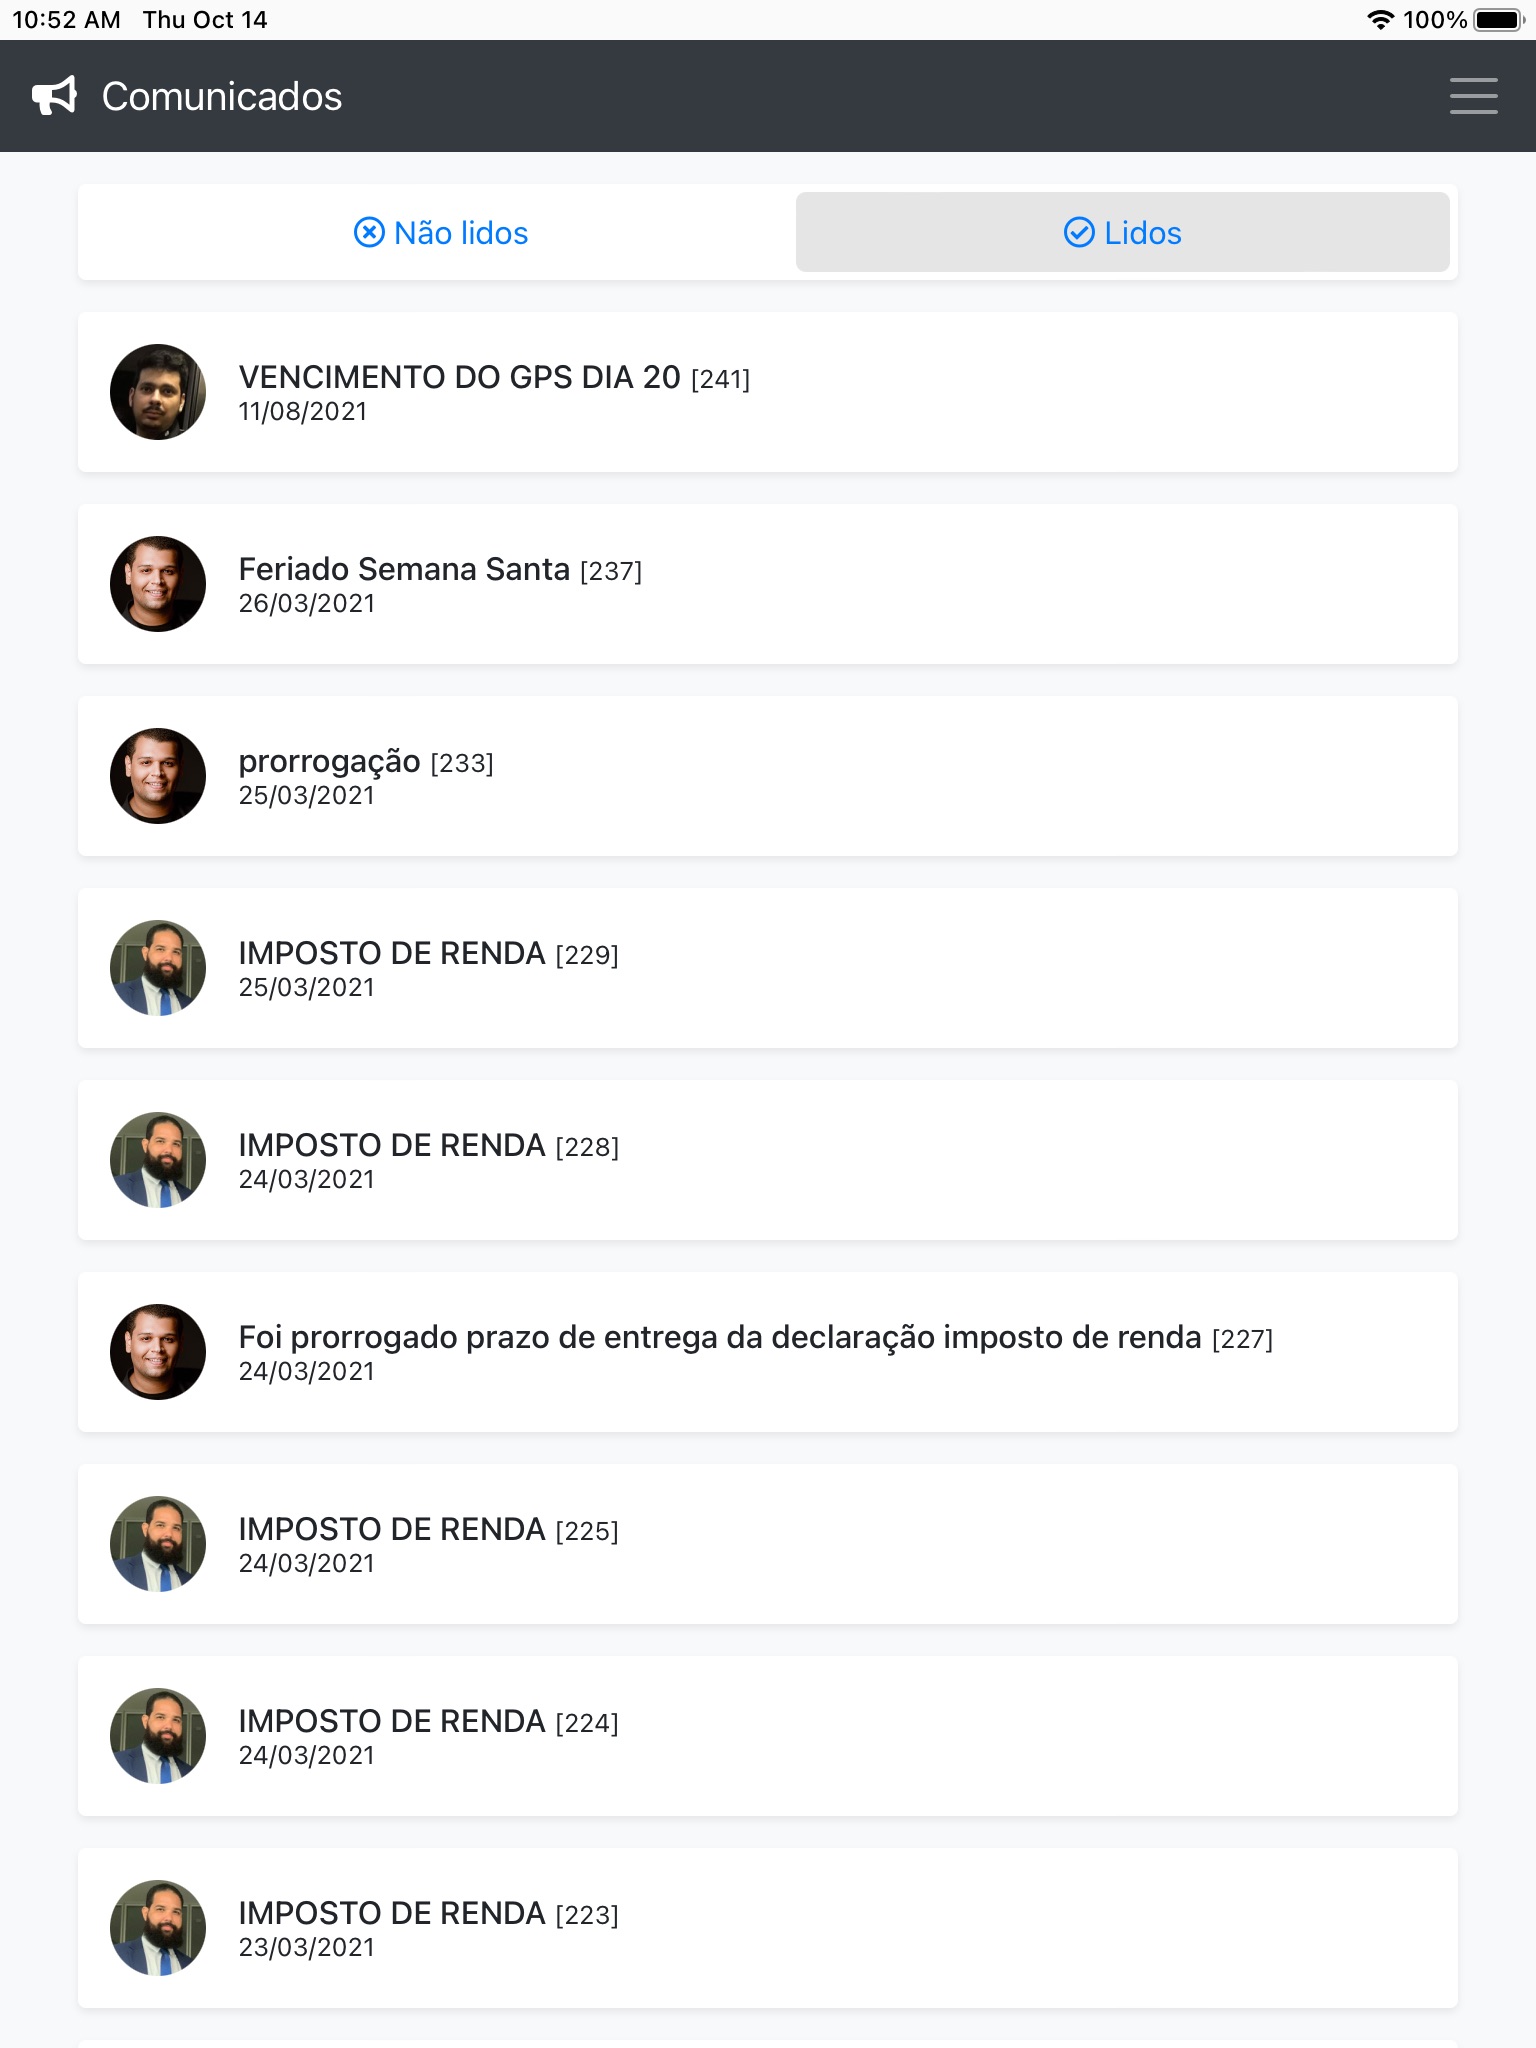 Cris Melim Organização screenshot 4